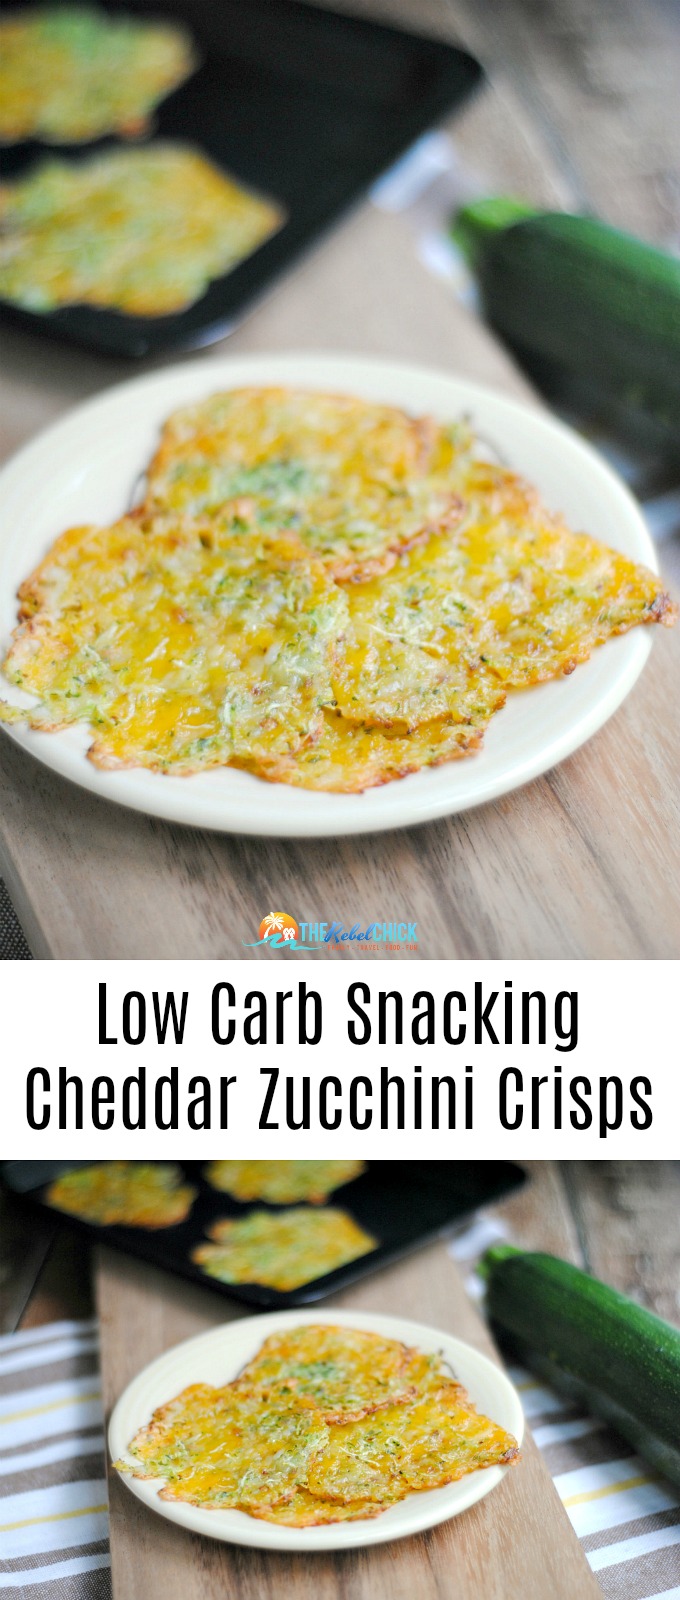 Cheddar Zucchini Crisps Recipe